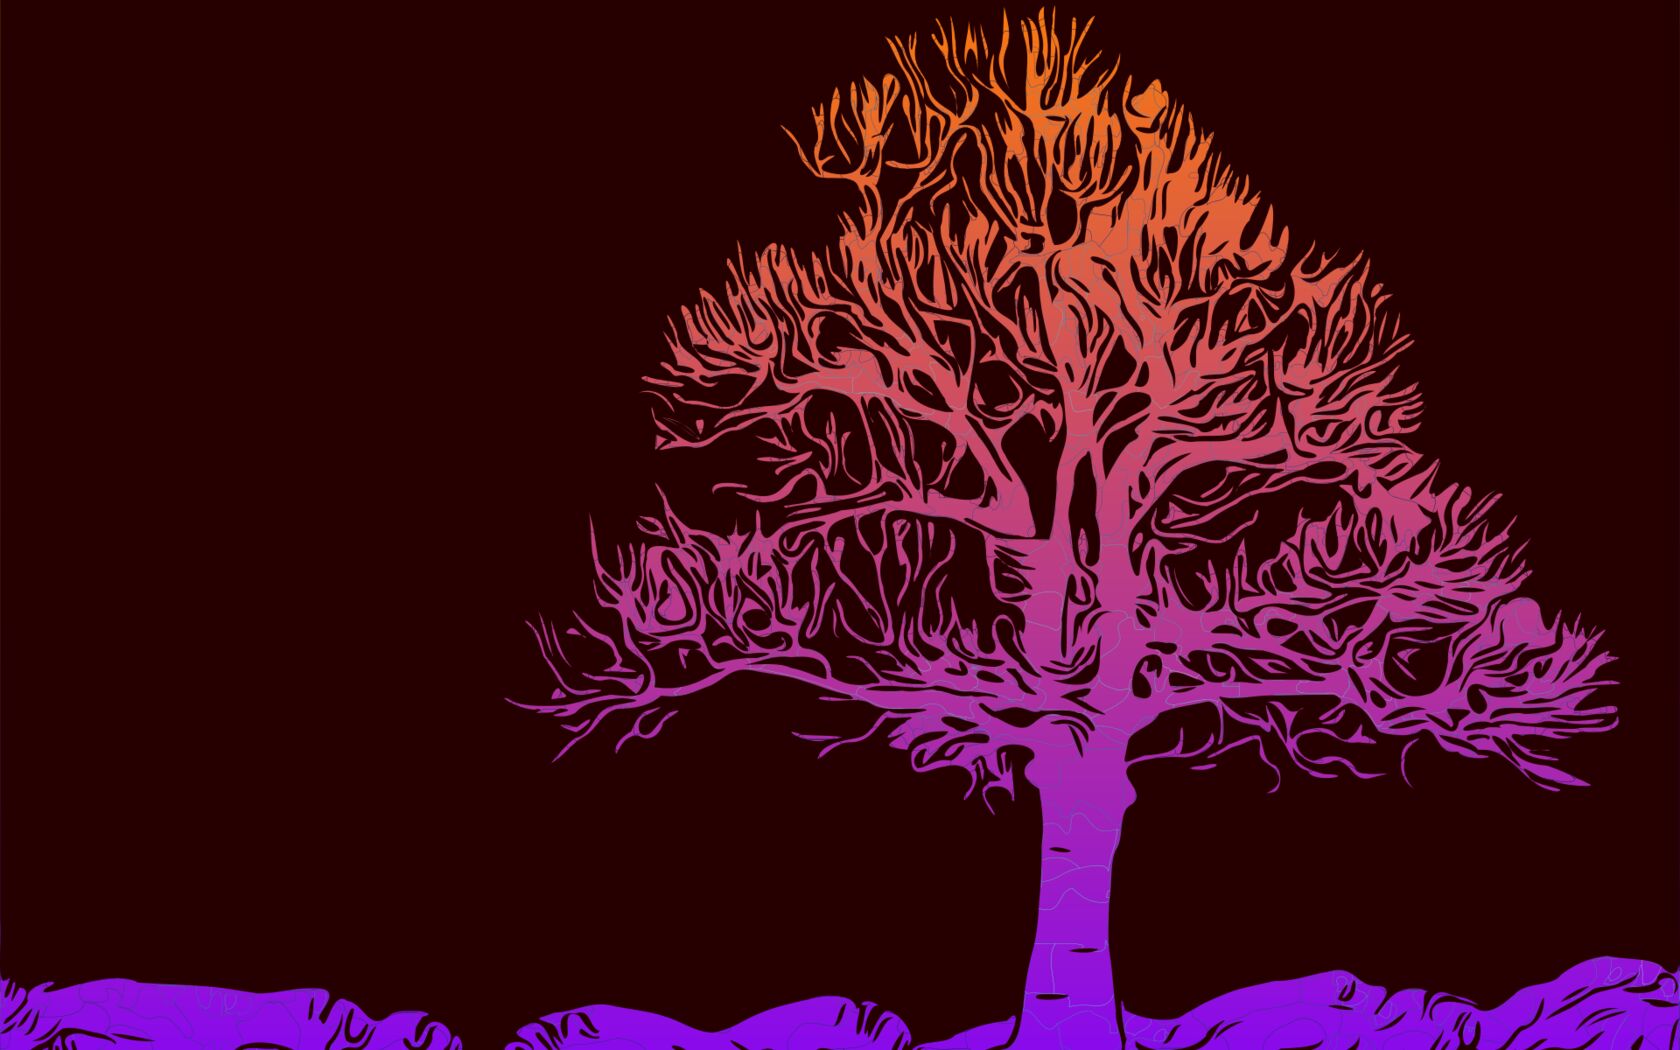 多彩抽象大树唯美背景壁纸图片 如彩虹般的紫色，粉红色